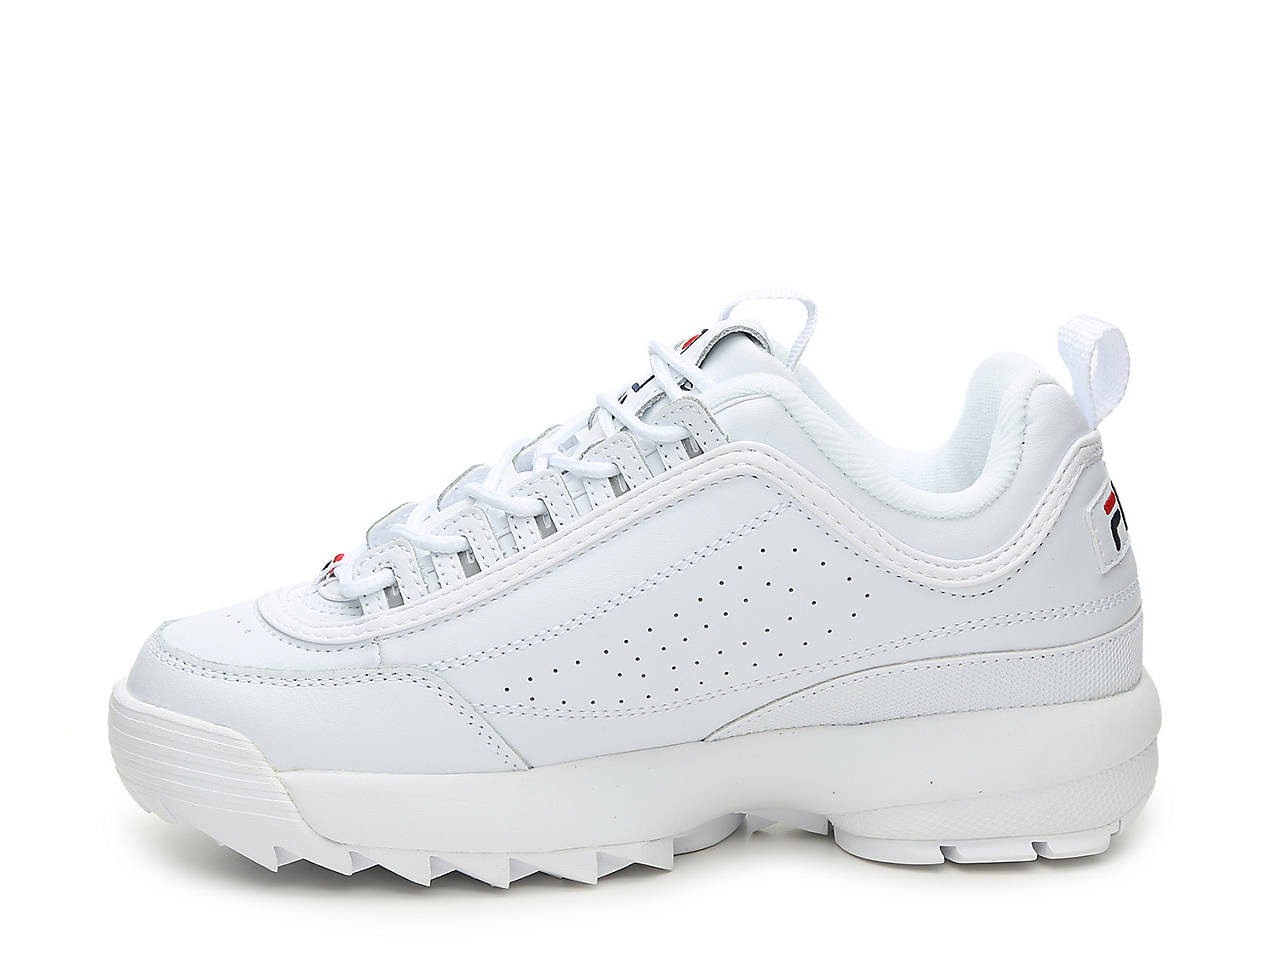 Fila Disruptor II Premium Sneaker - Women's Women's Shoes | DSW